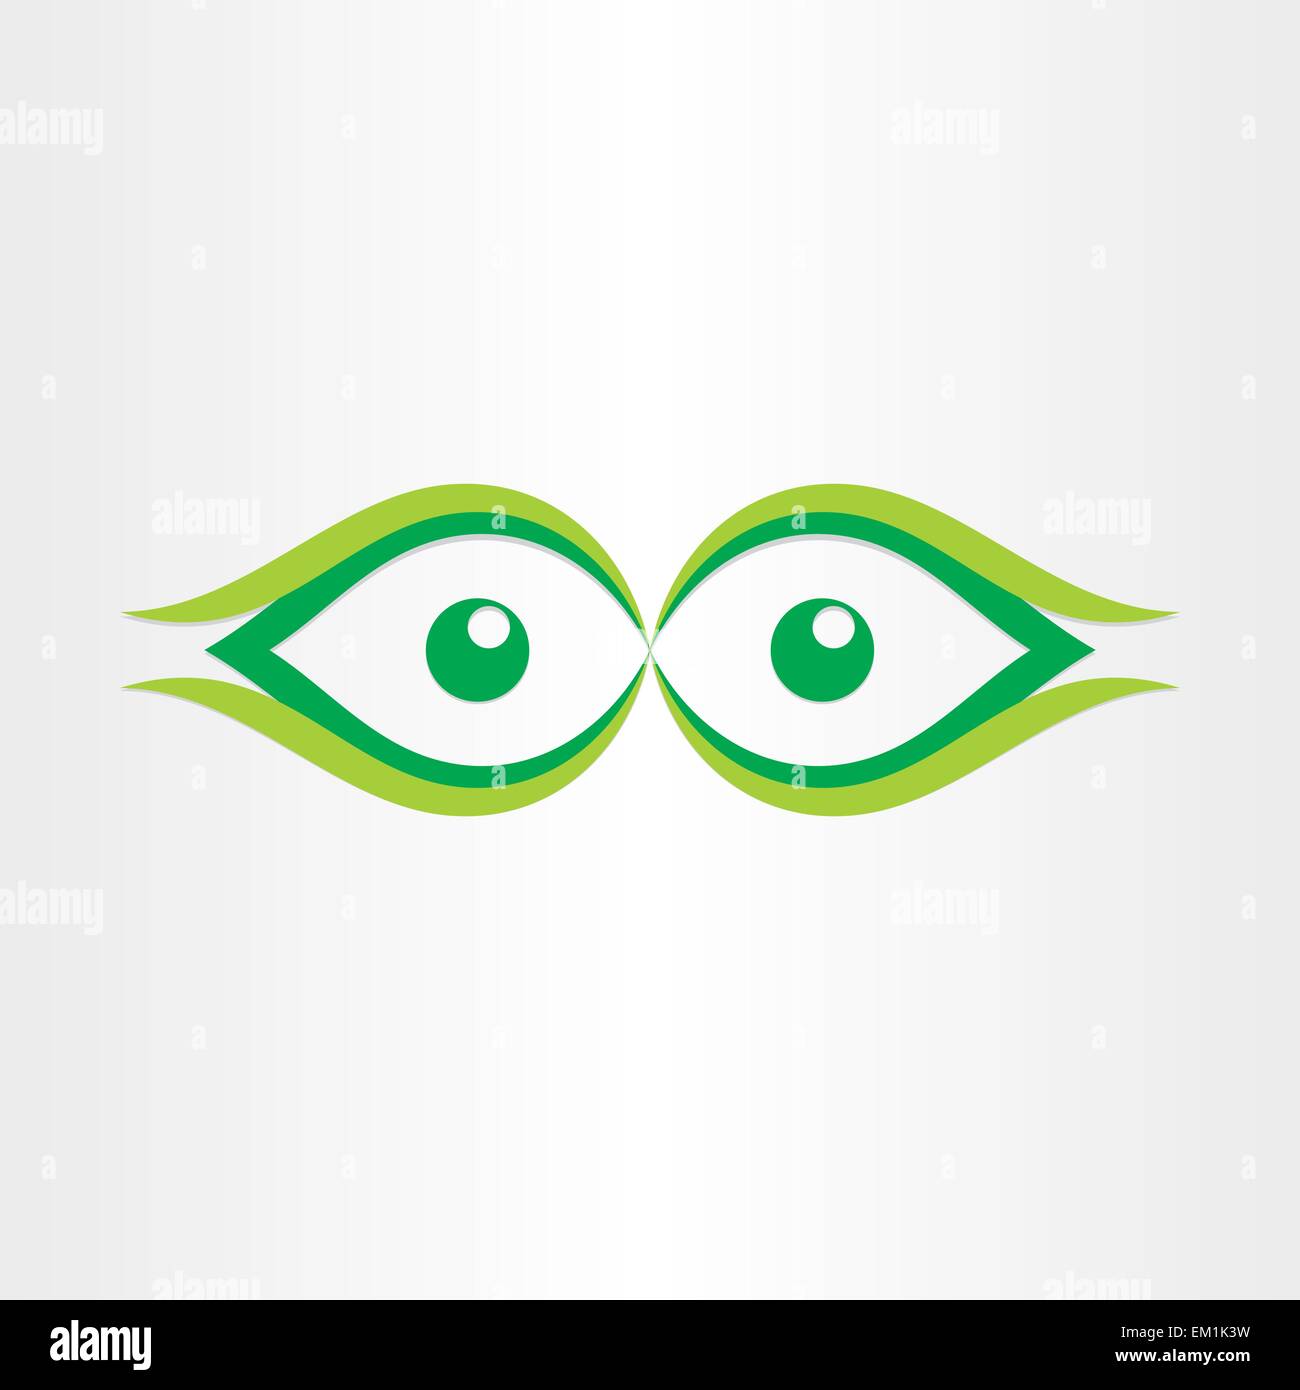 das menschliche Auge stilisiert Symbol sehen Sie grüne Punkt gerade  Vorderansicht Stock-Vektorgrafik - Alamy